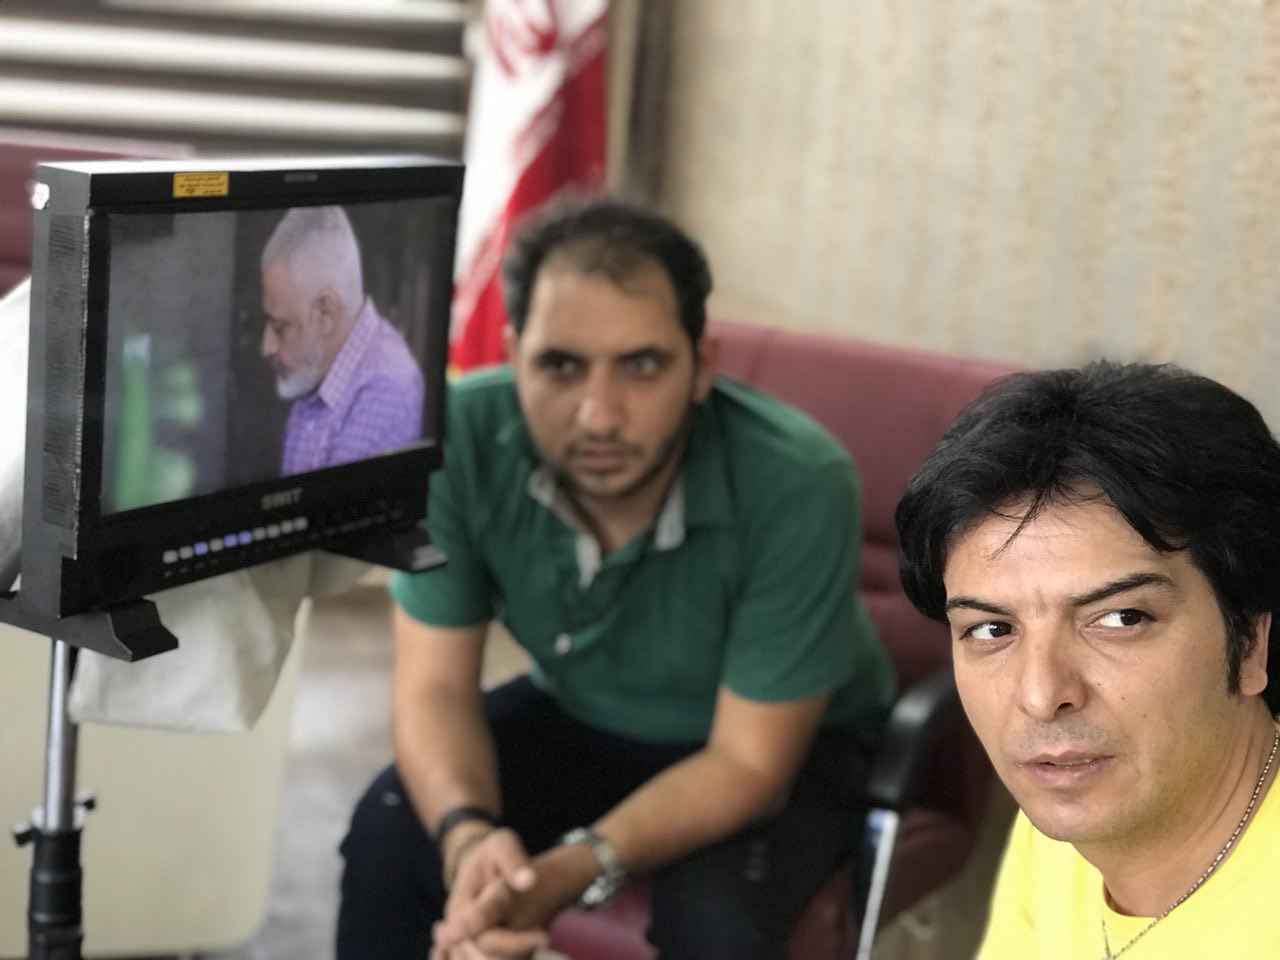 تصویری از سیدرضا آل‌احمدی، دستیاراول کارگردان و برنامه‌ریزی سینما و تلویزیون در حال بازیگری سر صحنه یکی از آثارش